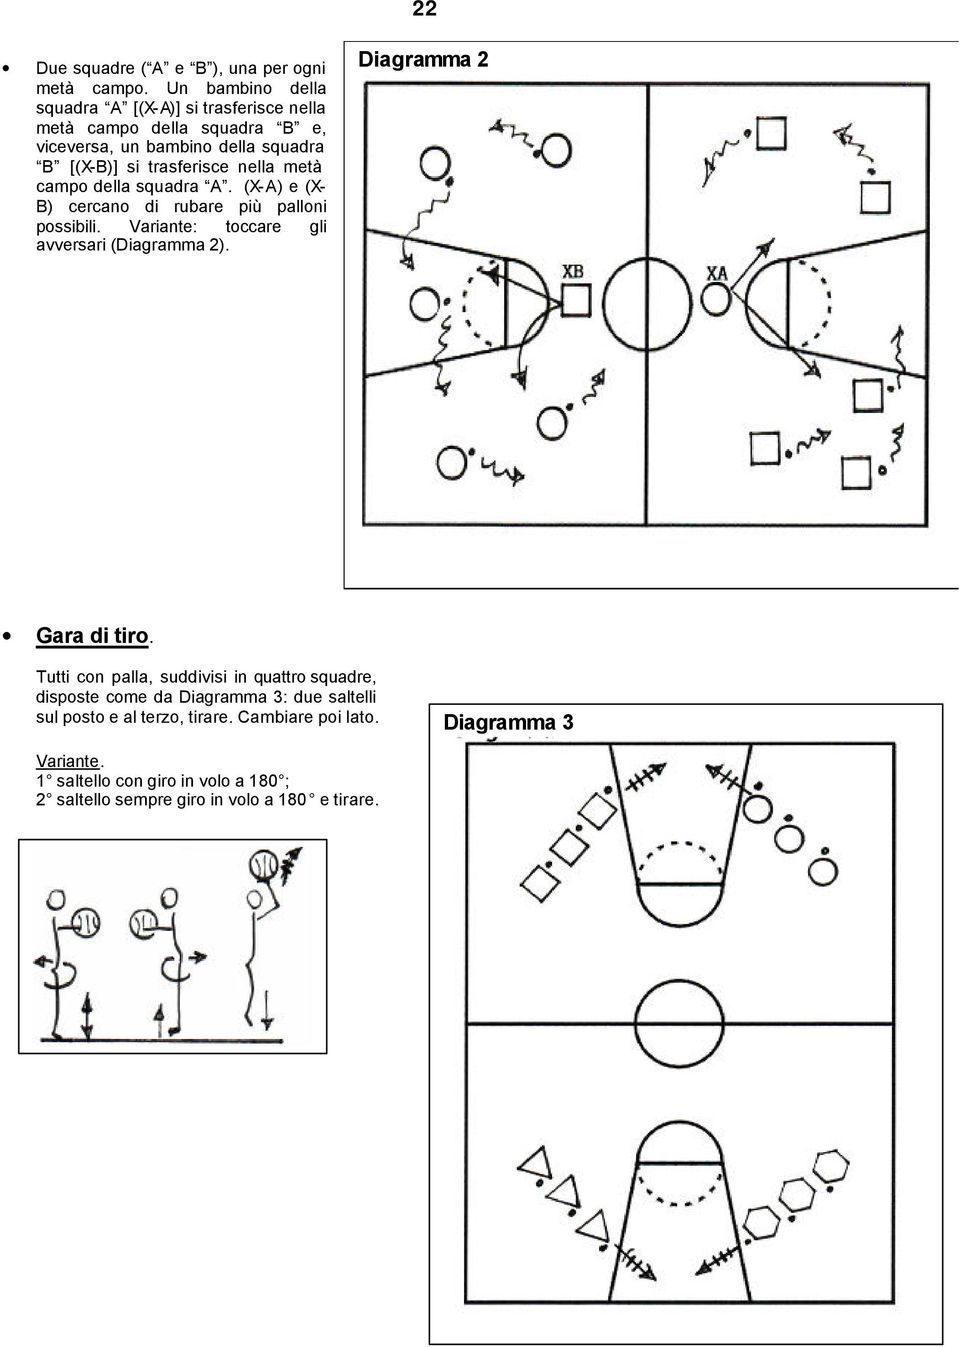 nella metà campo della squadra A. (X-A) e (X- B) cercano di rubare più palloni possibili. Variante: toccare gli avversari (Diagramma 2).